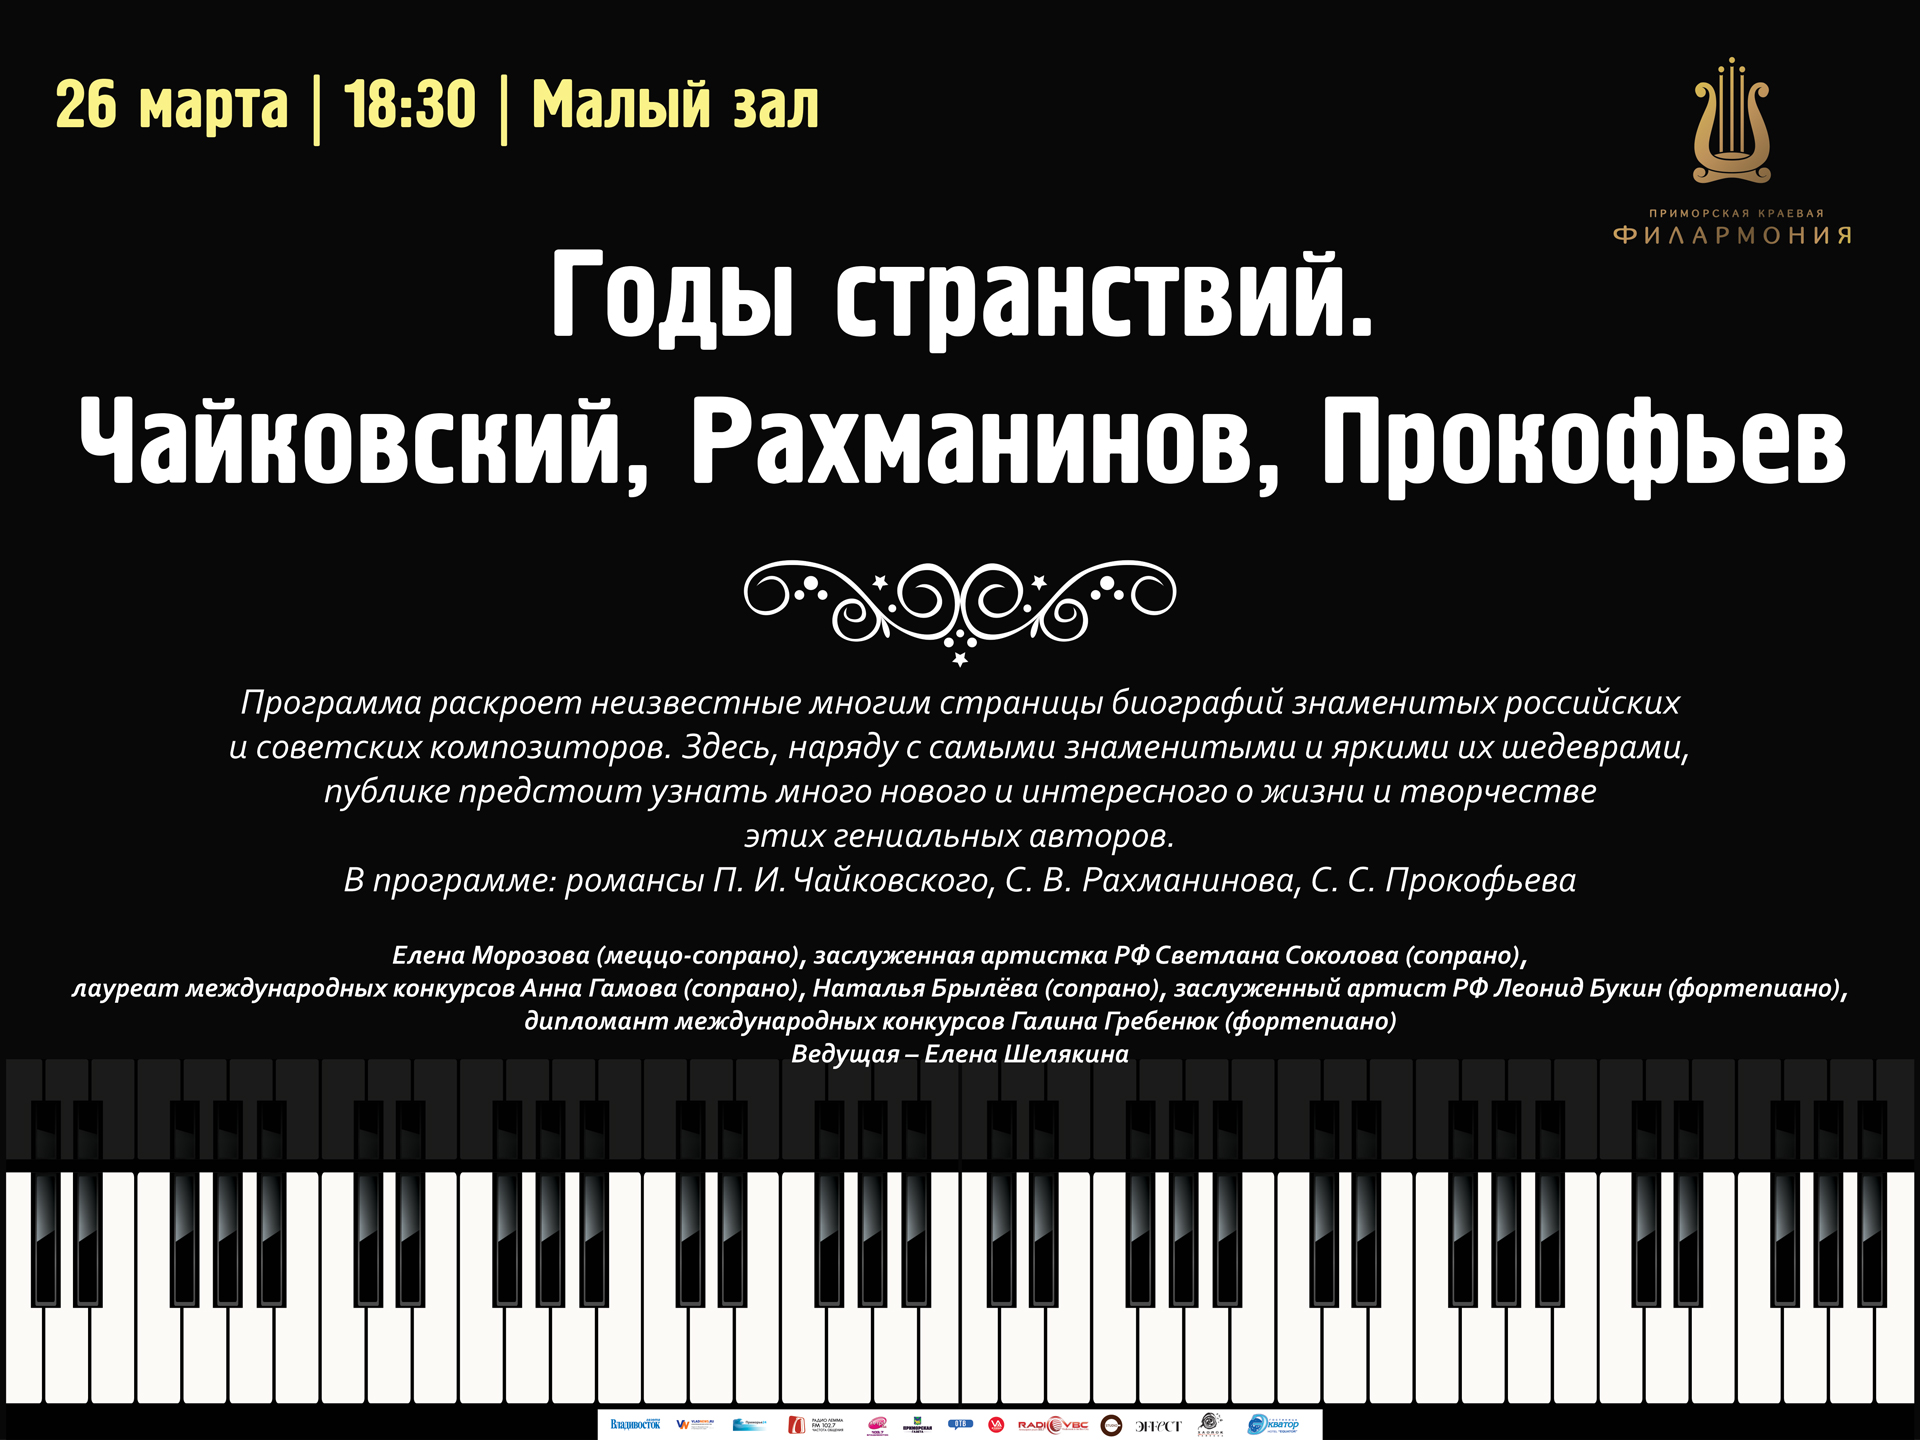 26 марта Малый зал 18.30 Концертная программа «Годы странствий. Чайковский, Рахманинов, Прокофьев»